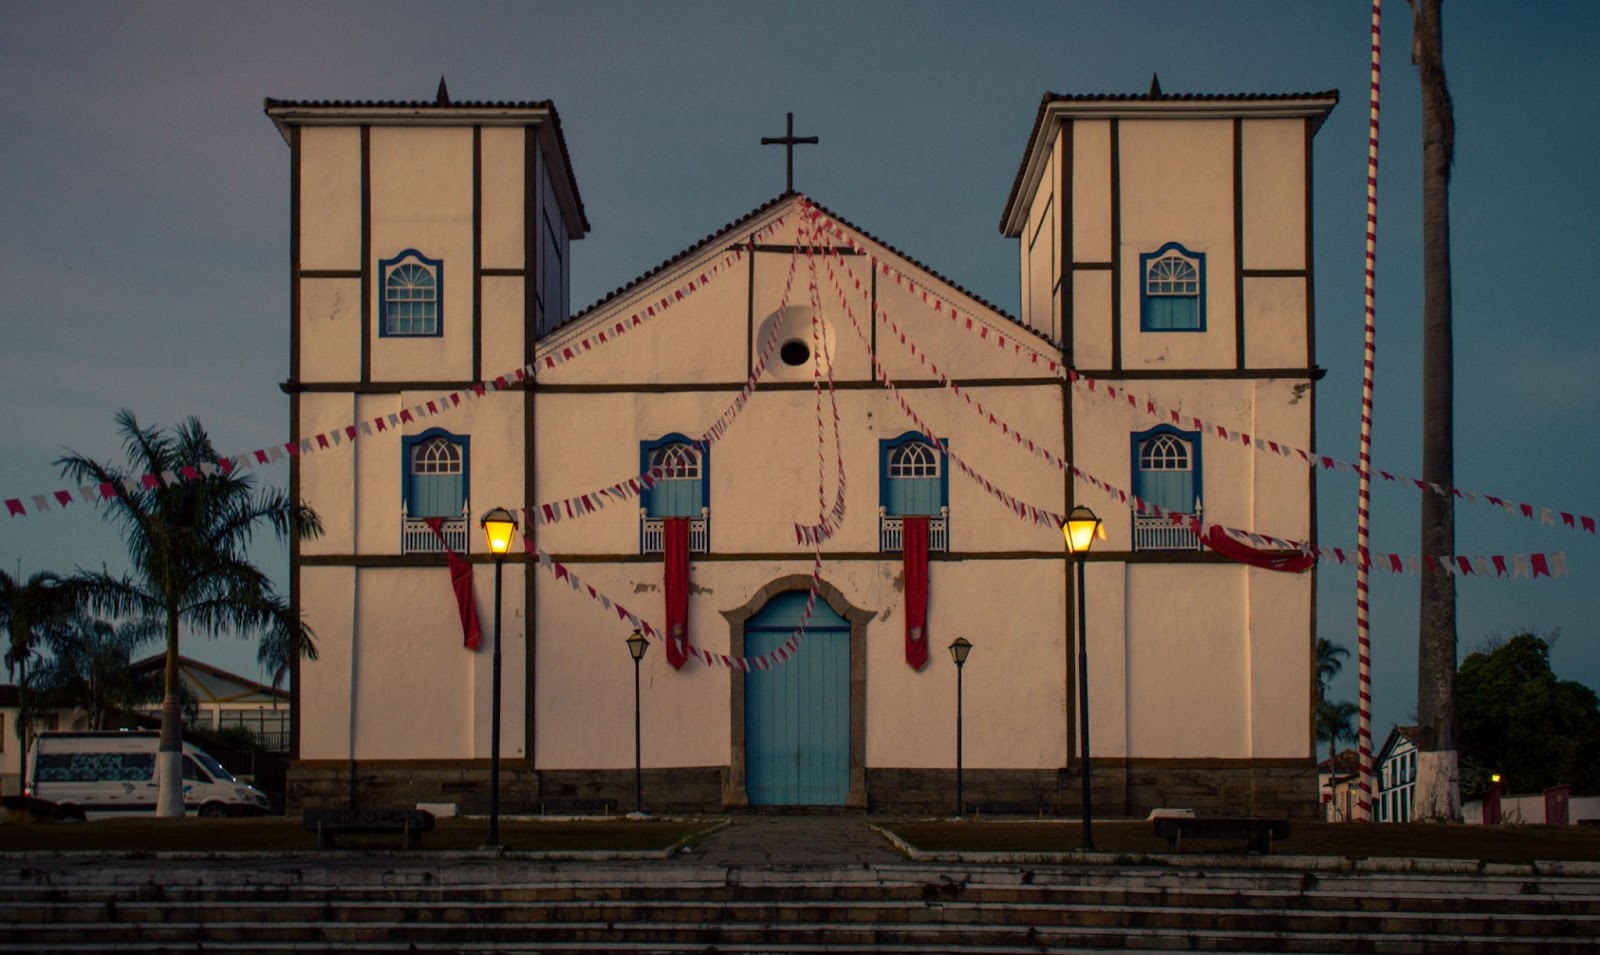 Vista da fachada da Igreja Nossa Senhora do Rosário com bandeirinhas enfeitando a igreja em Pirenópolis